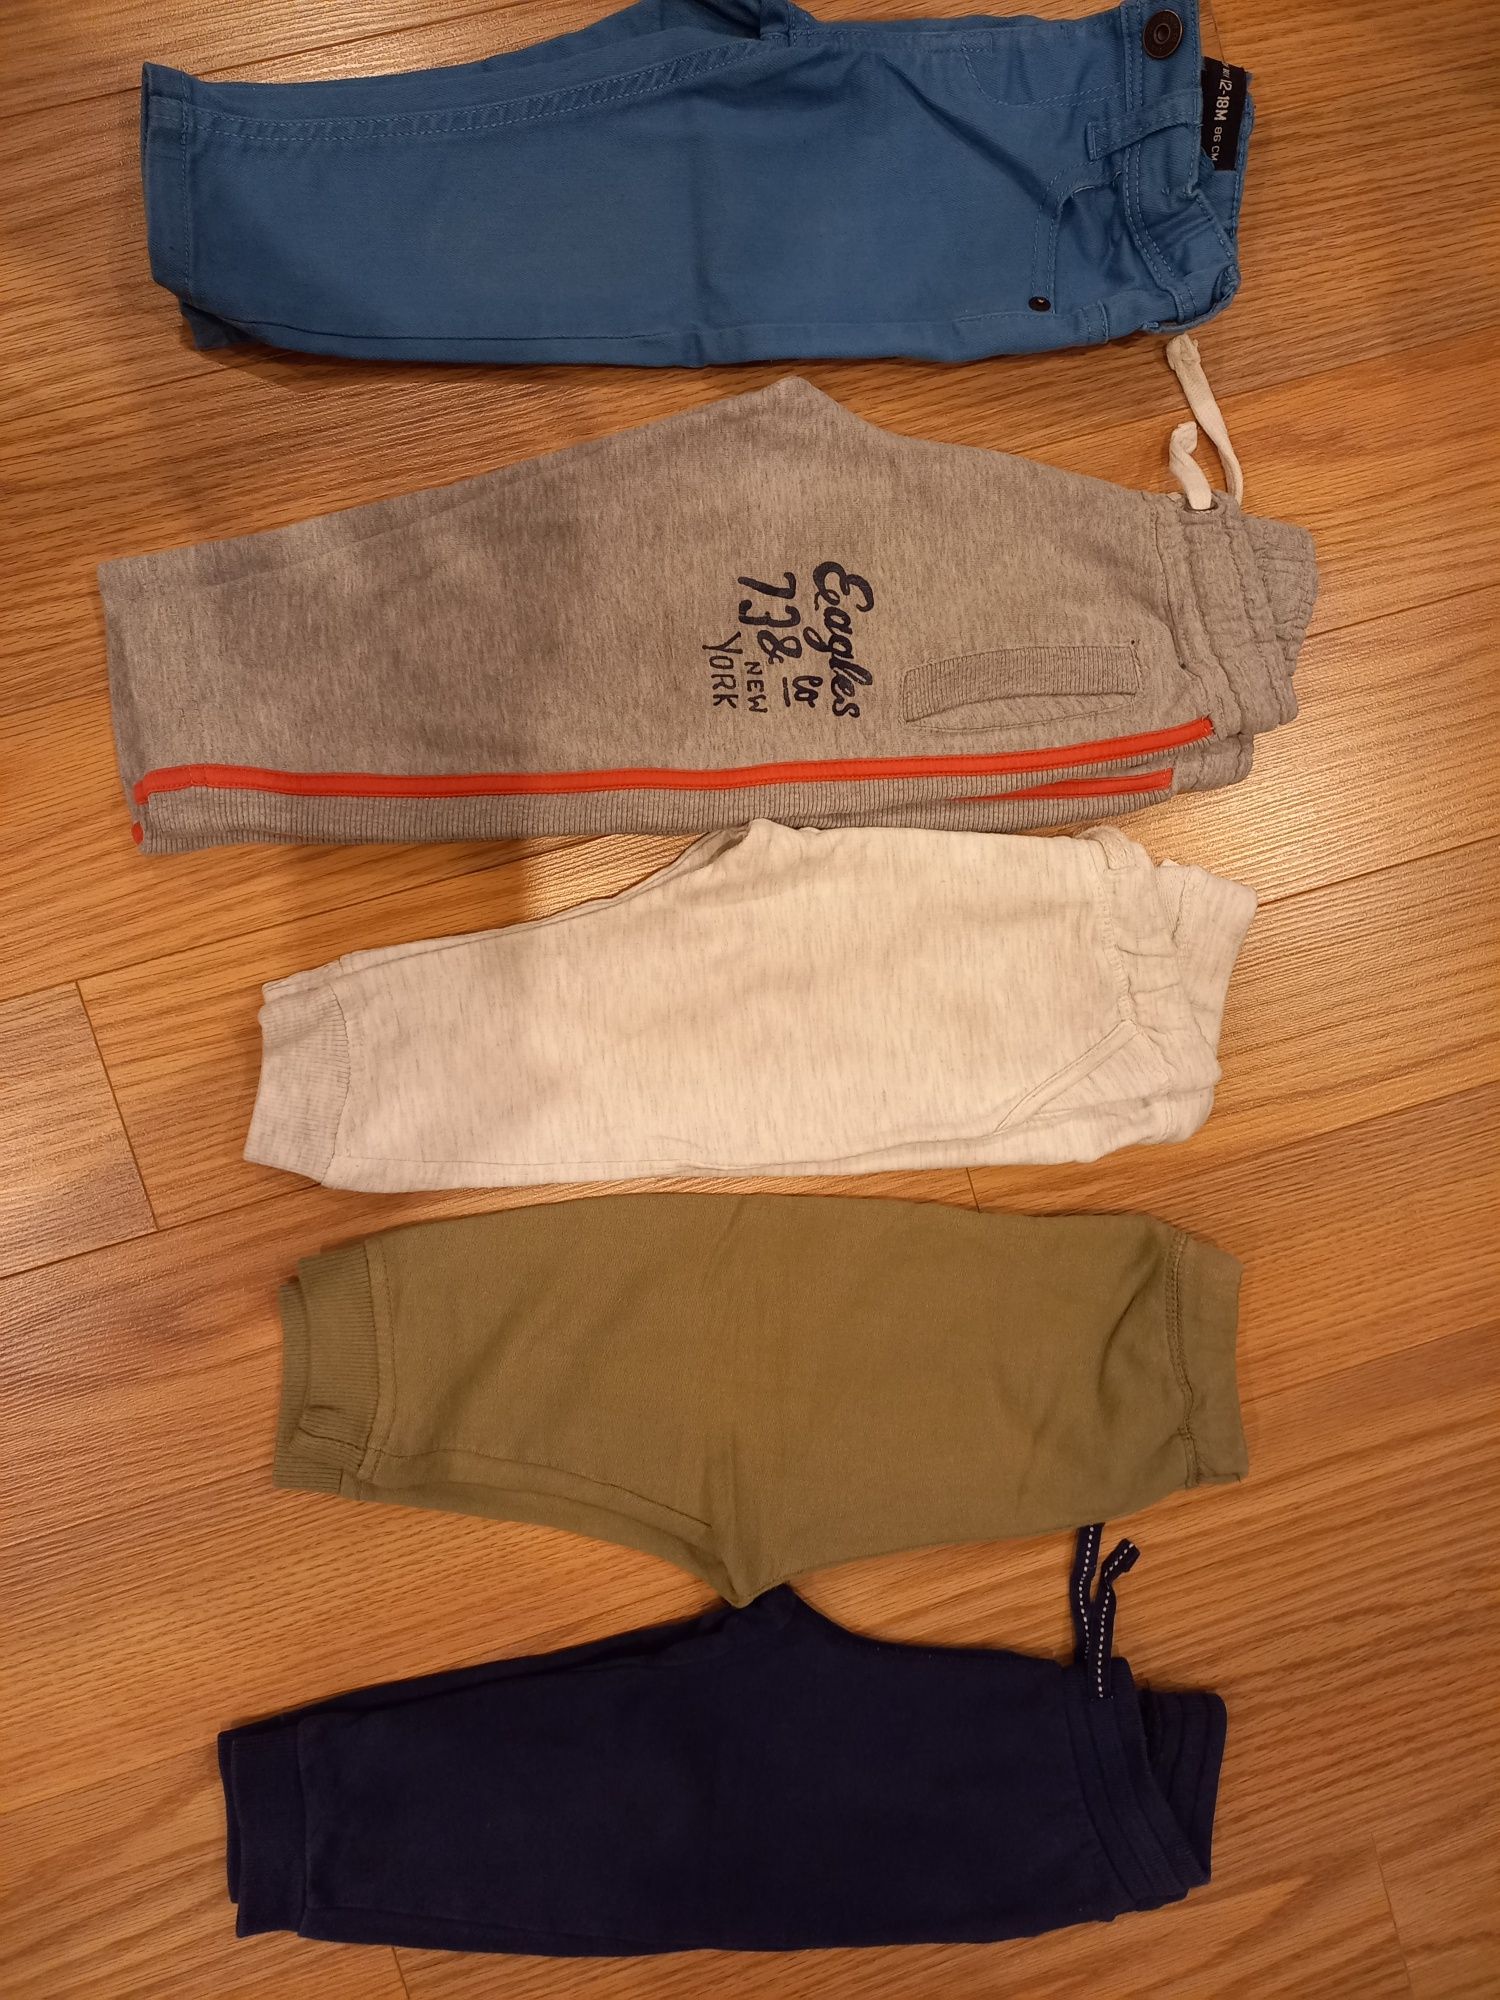 Conjunto calças/ camisolas tamanho 12-18 meses (Ref. 6)